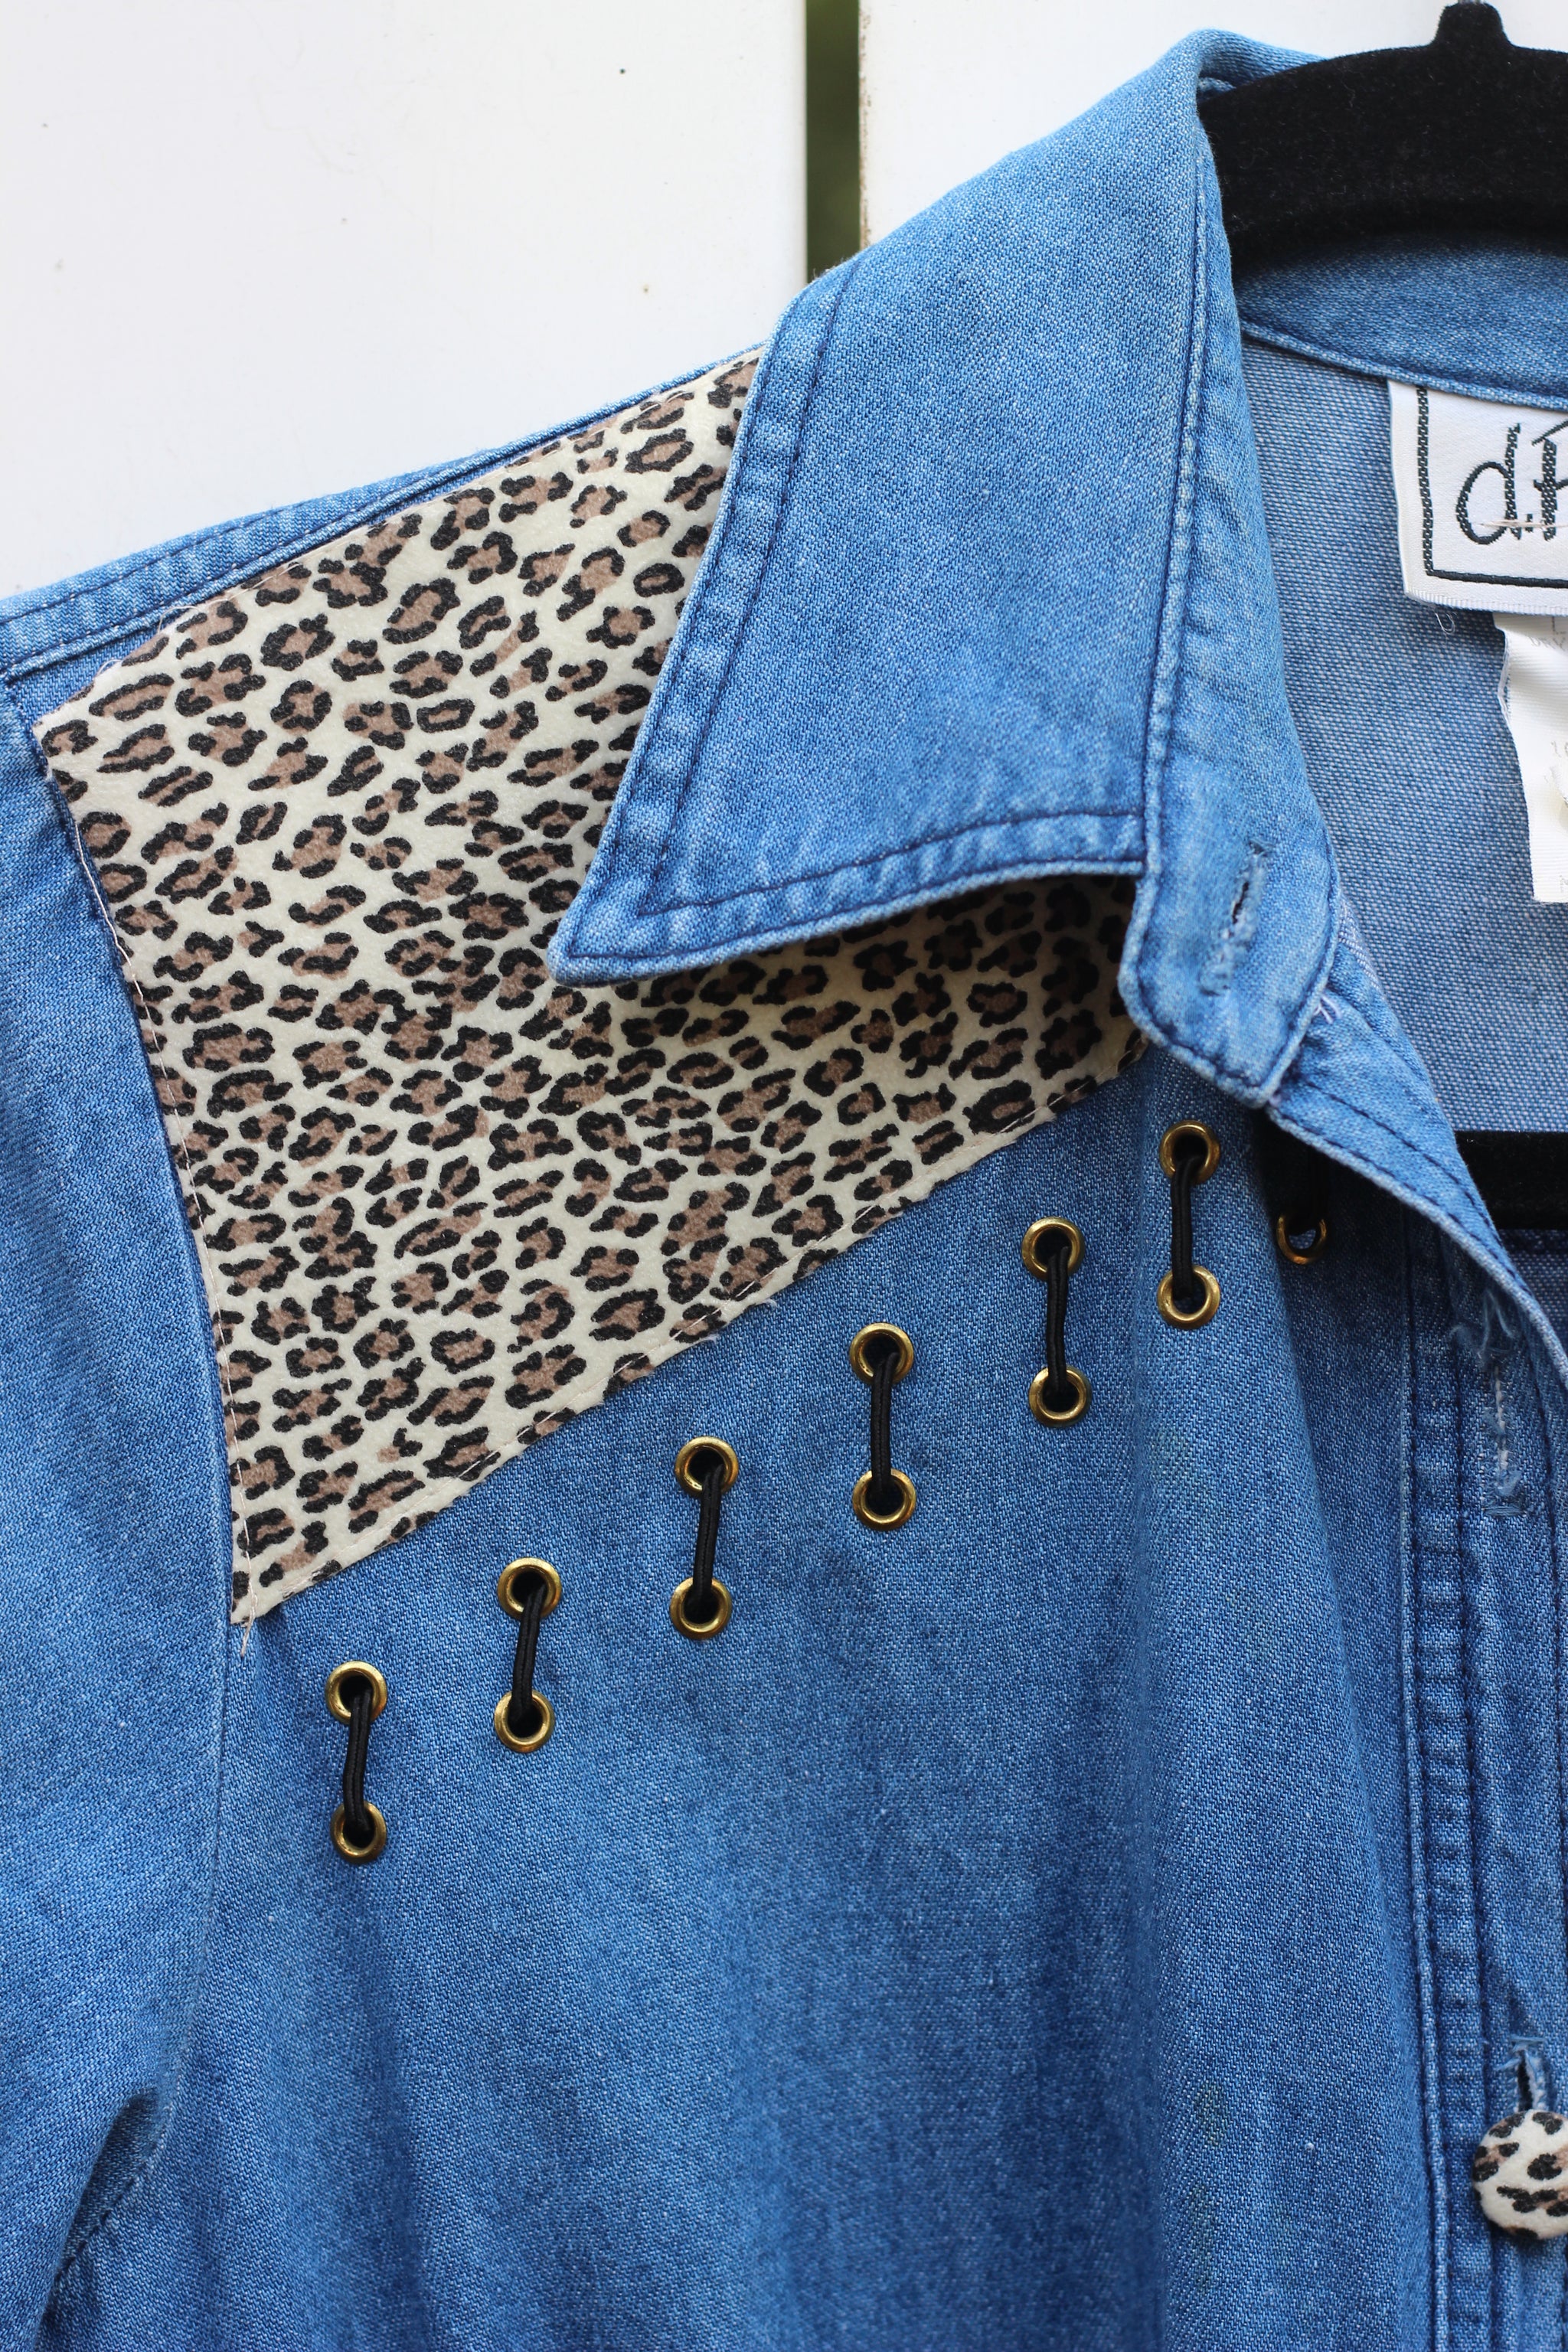 Vintage Denim & Leopard Button Up Dress (XS/S)